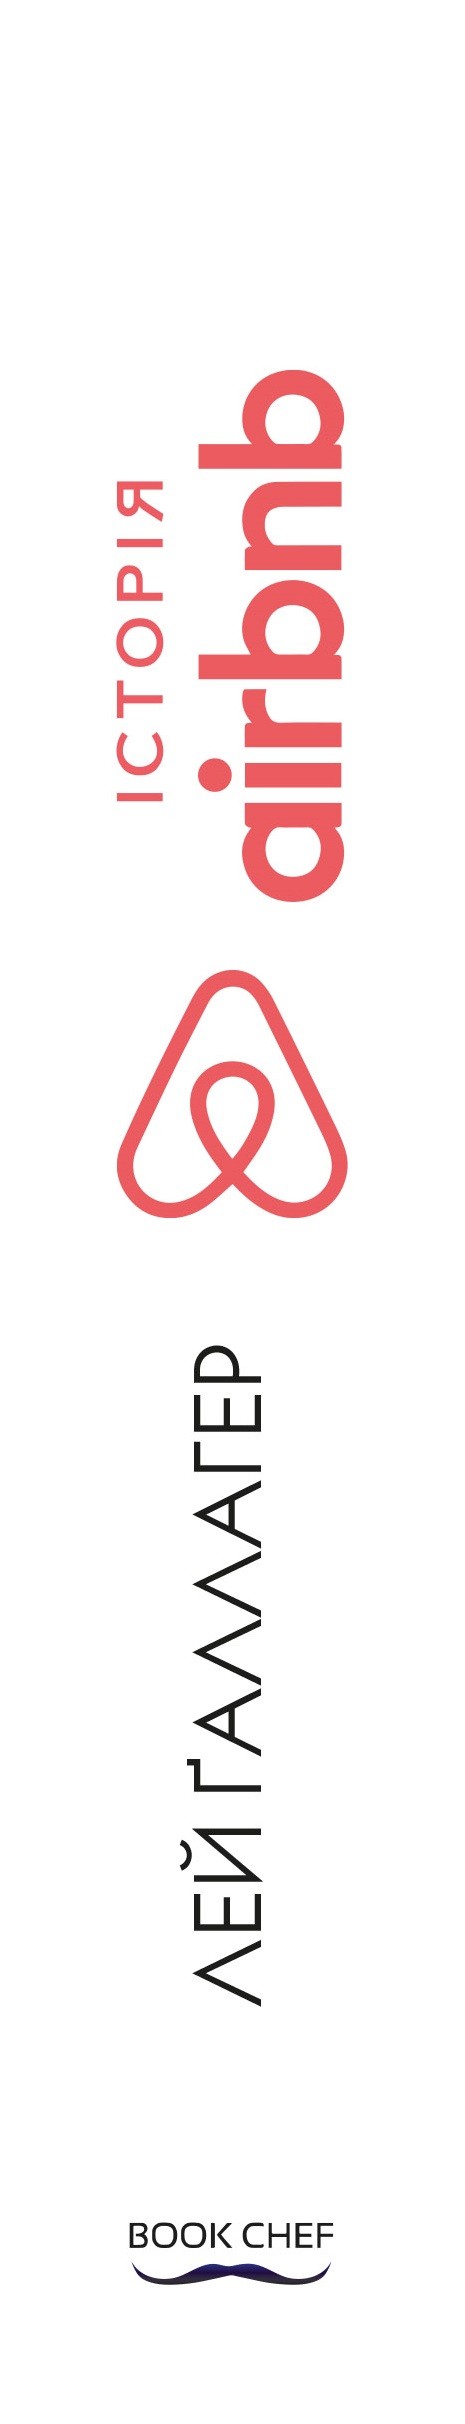 Історія Airbnb: Як троє звичайних хлопців підірвали готельну індустрію